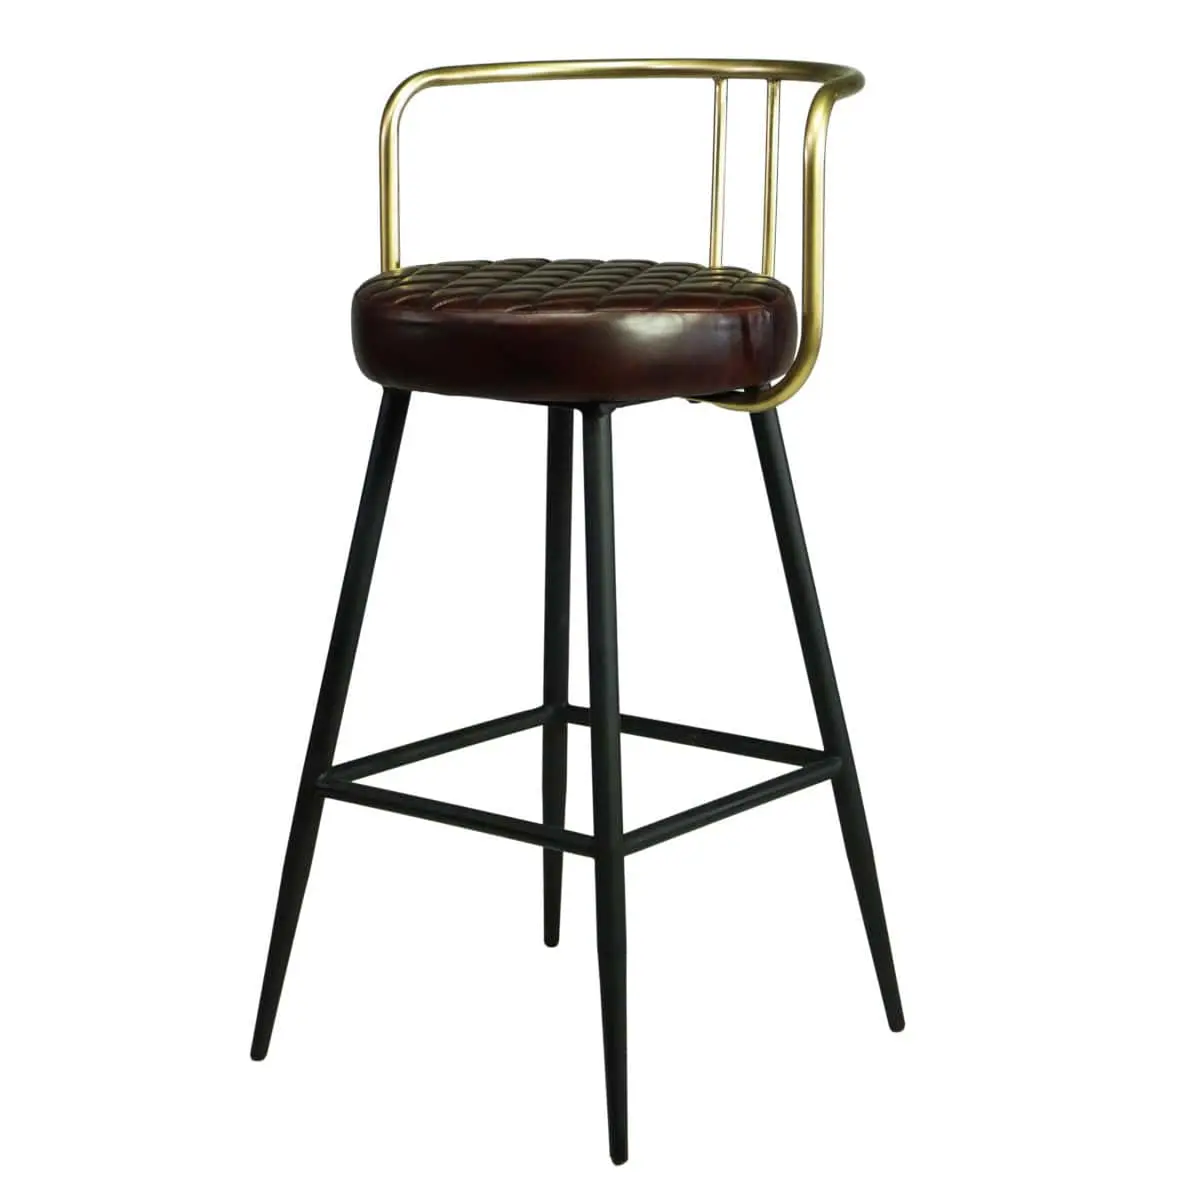 Design Barstuhl mit bequemen Sitzgefühl – Ledersitz aus Bueffelleder, Rückenlehne Messing-farben und Fußstütze